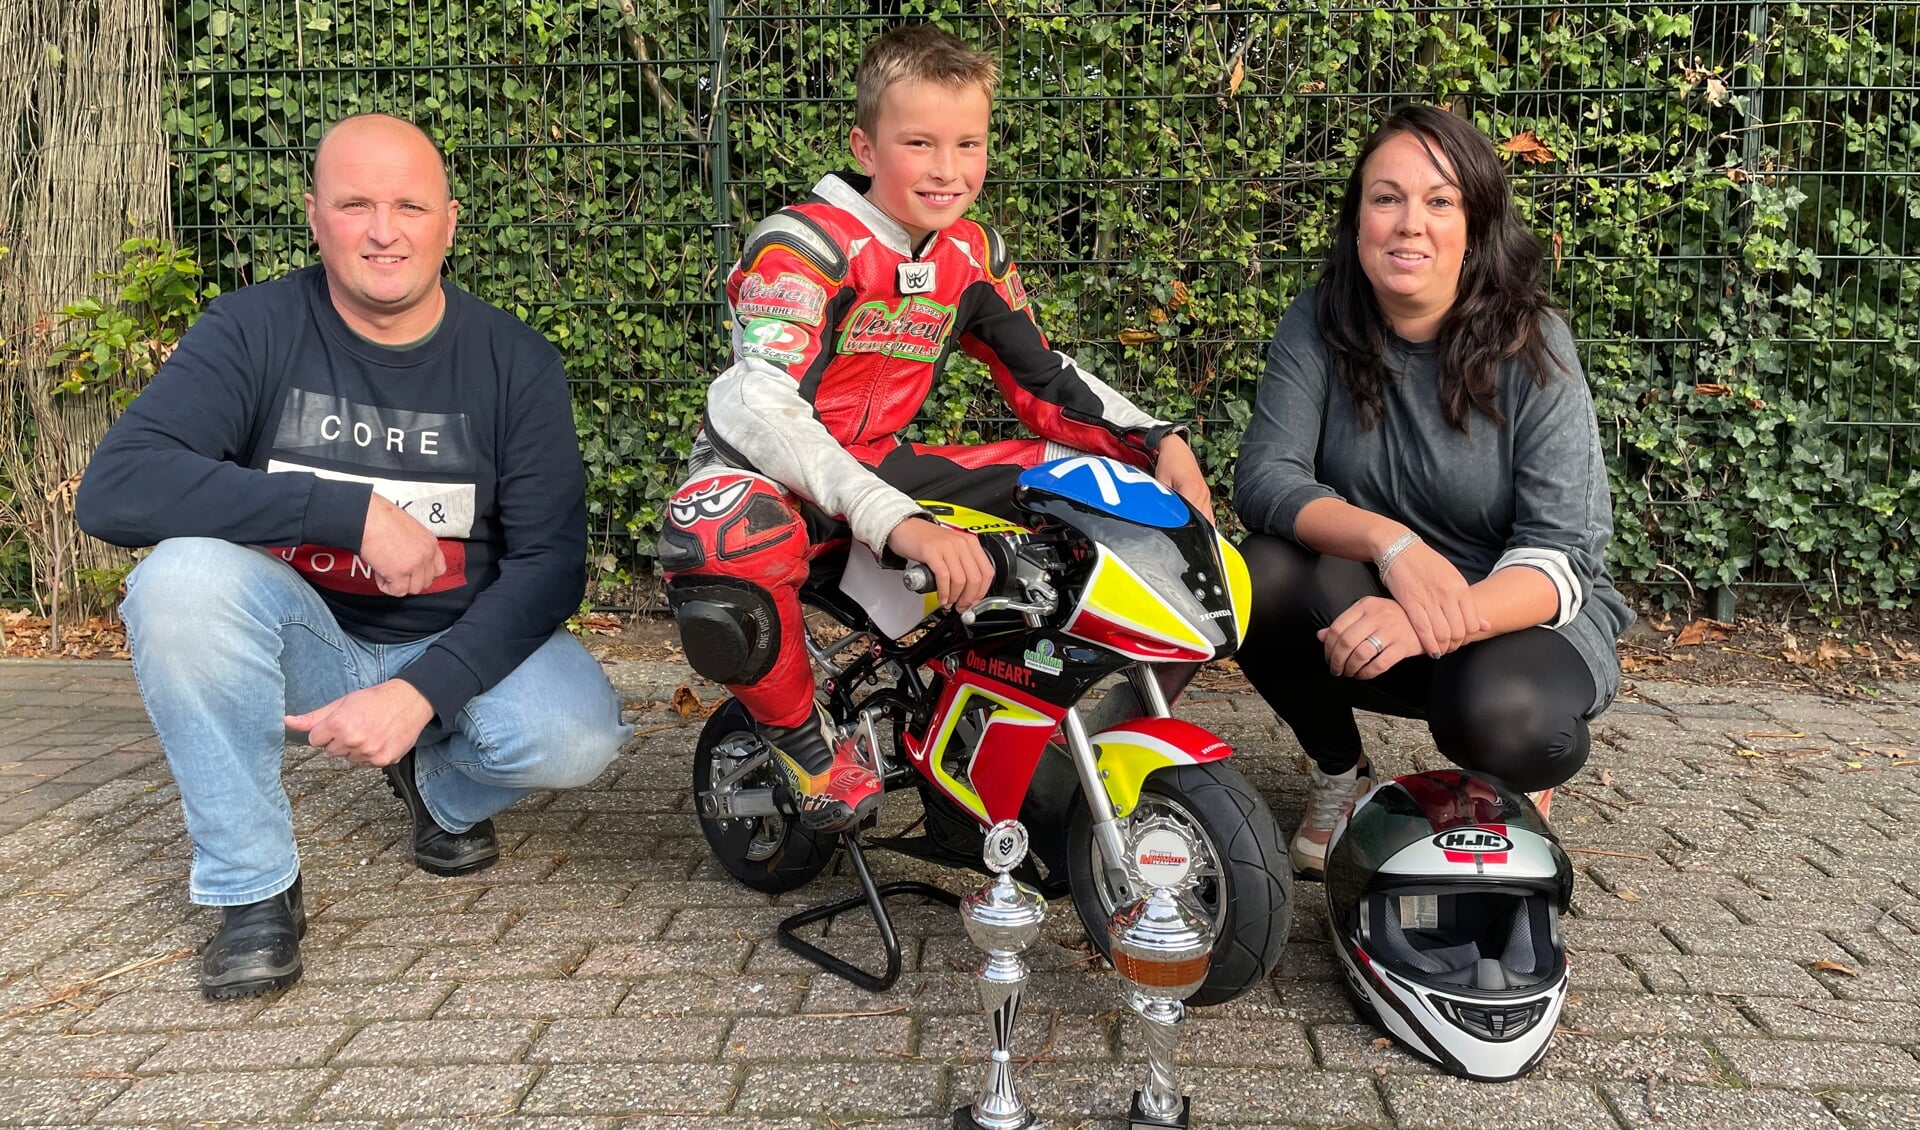 Mick Koomen op de minibike met zijn ouders Stefan en Daphne en de gewonnen bekers in het afgelopen jaar.